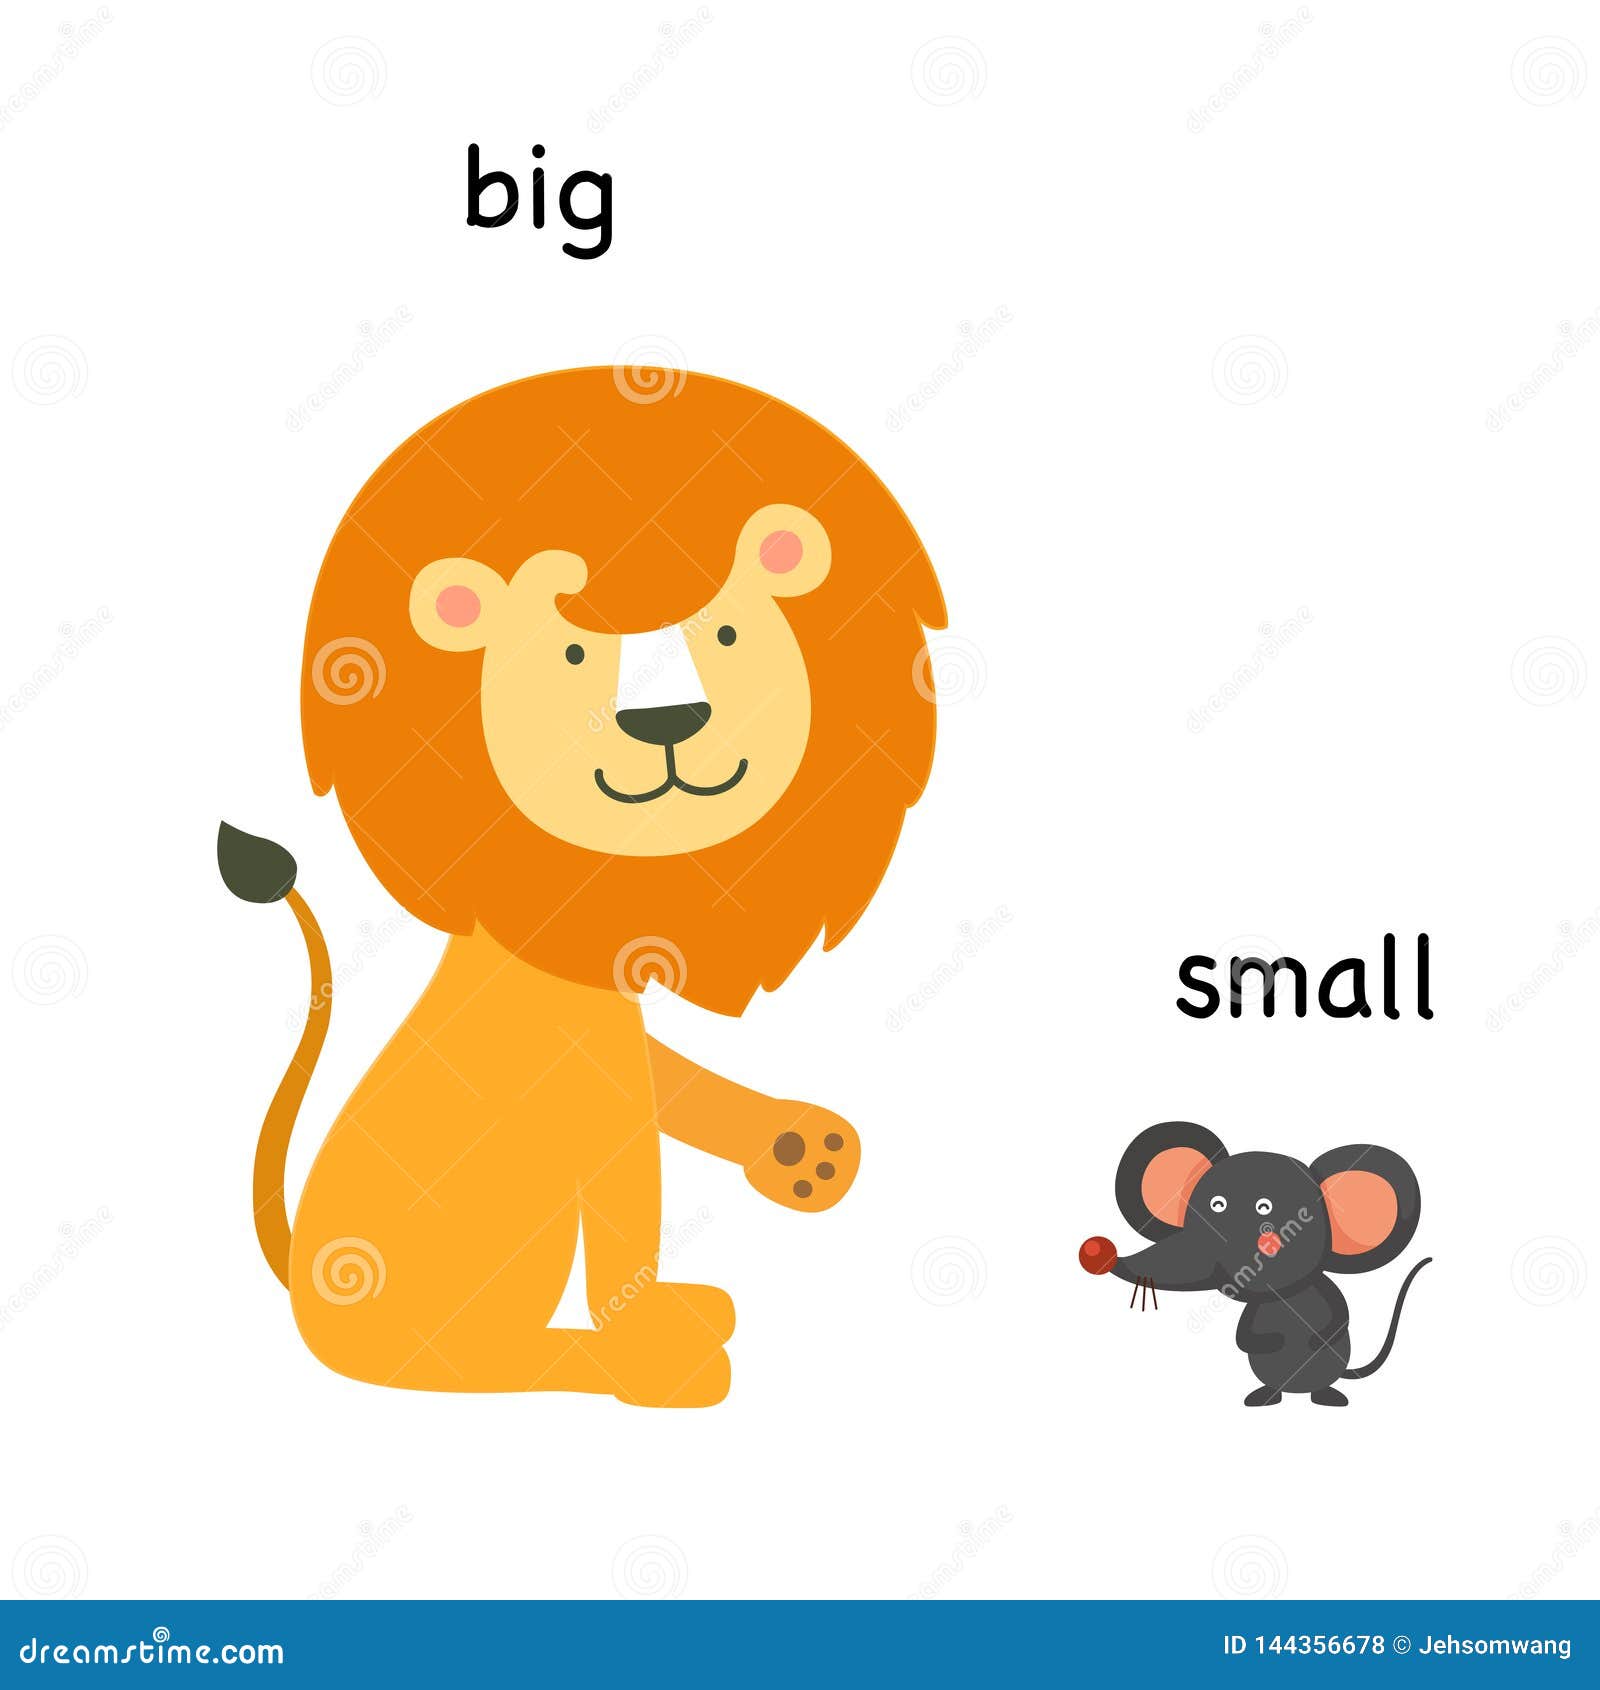 Um pequeno animal com um grande número de pequenos objetos em cima dele.